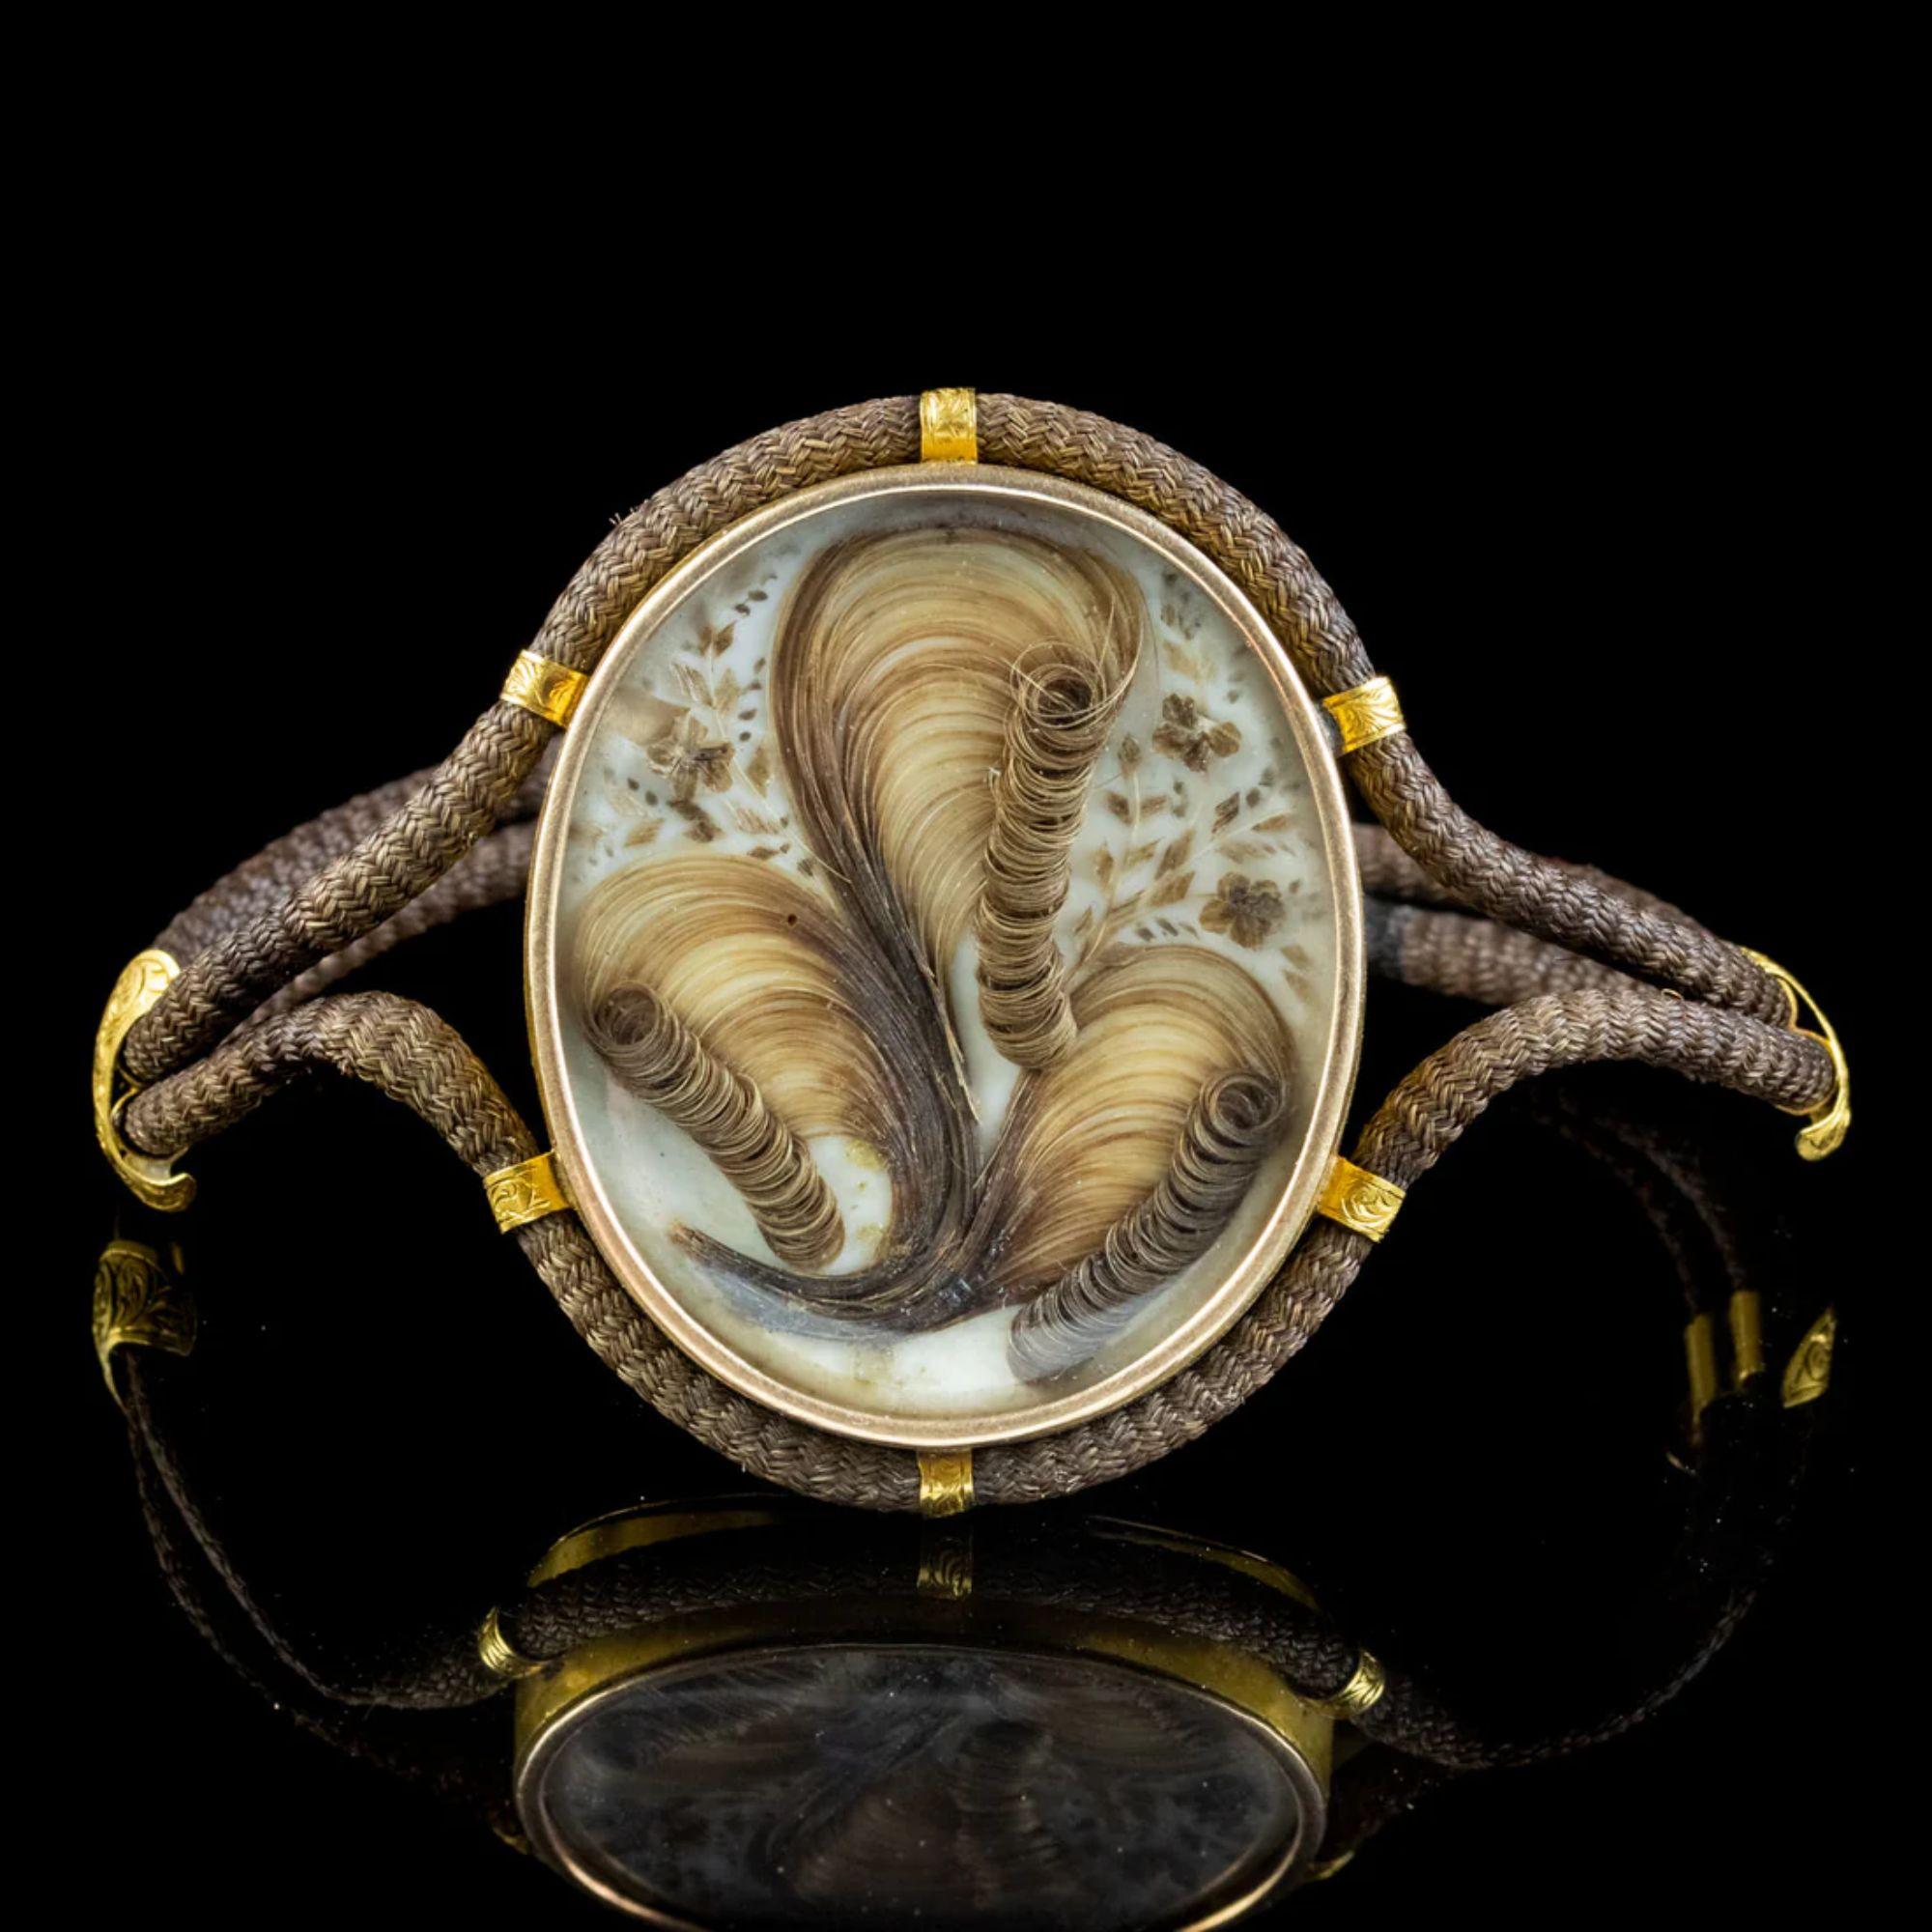 Ein faszinierendes antikes georgianisches Trauerarmband aus dem frühen 19. Jahrhundert mit einem großen doppelseitigen Medaillon aus 18-karätigem Gold mit einer prächtigen Darstellung von gekräuseltem Haar und Vergissmeinnicht, das hinter einem